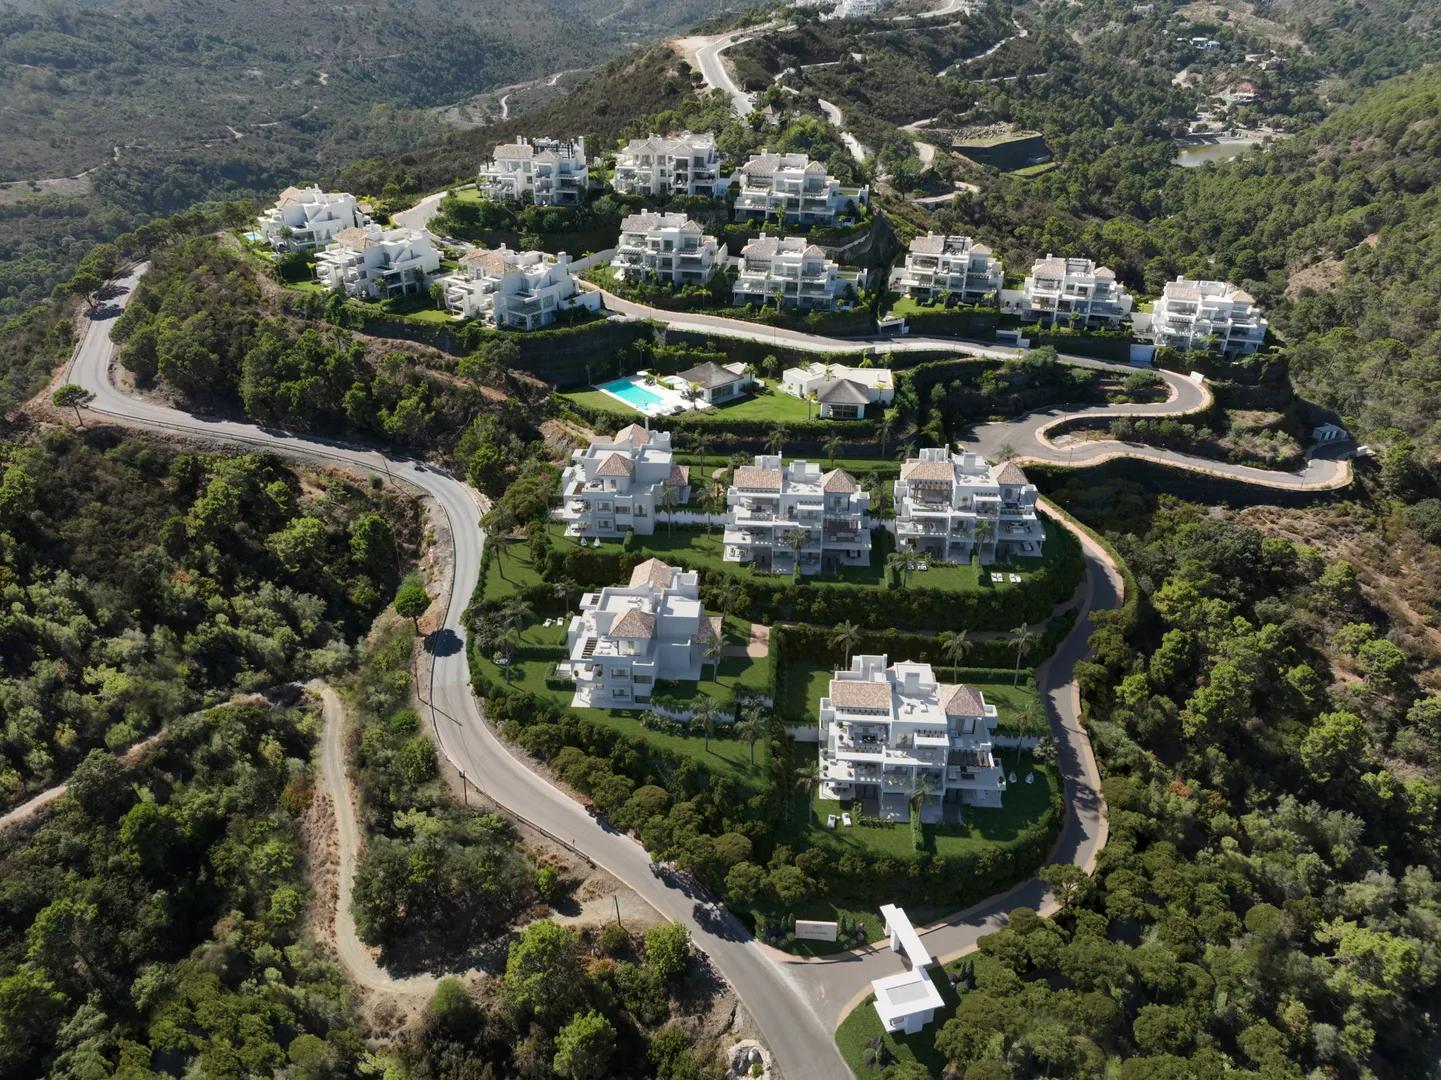 Exclusiva urbanización con vistas al mar y montaña, 30 apartamentos de lujo con piscina y jardín